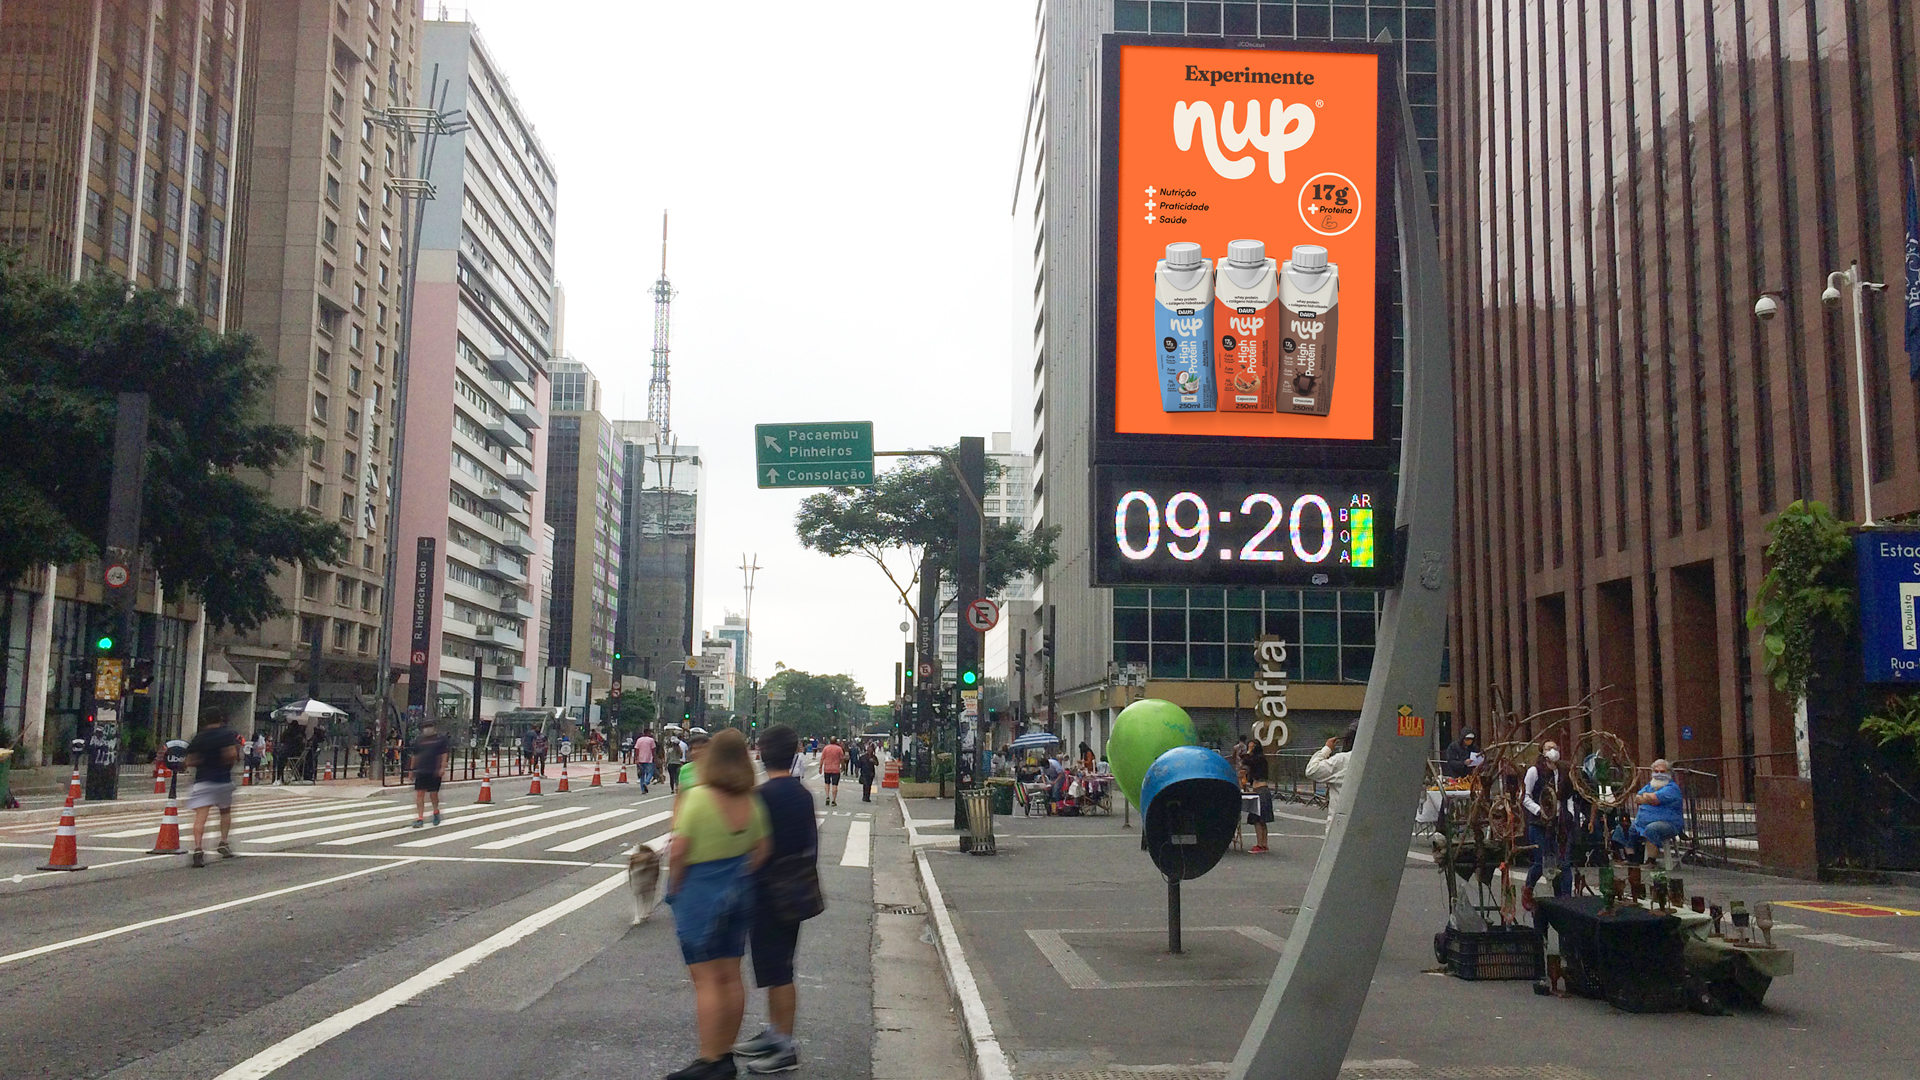 Imagem de relógio de rua com comunicação NUP.